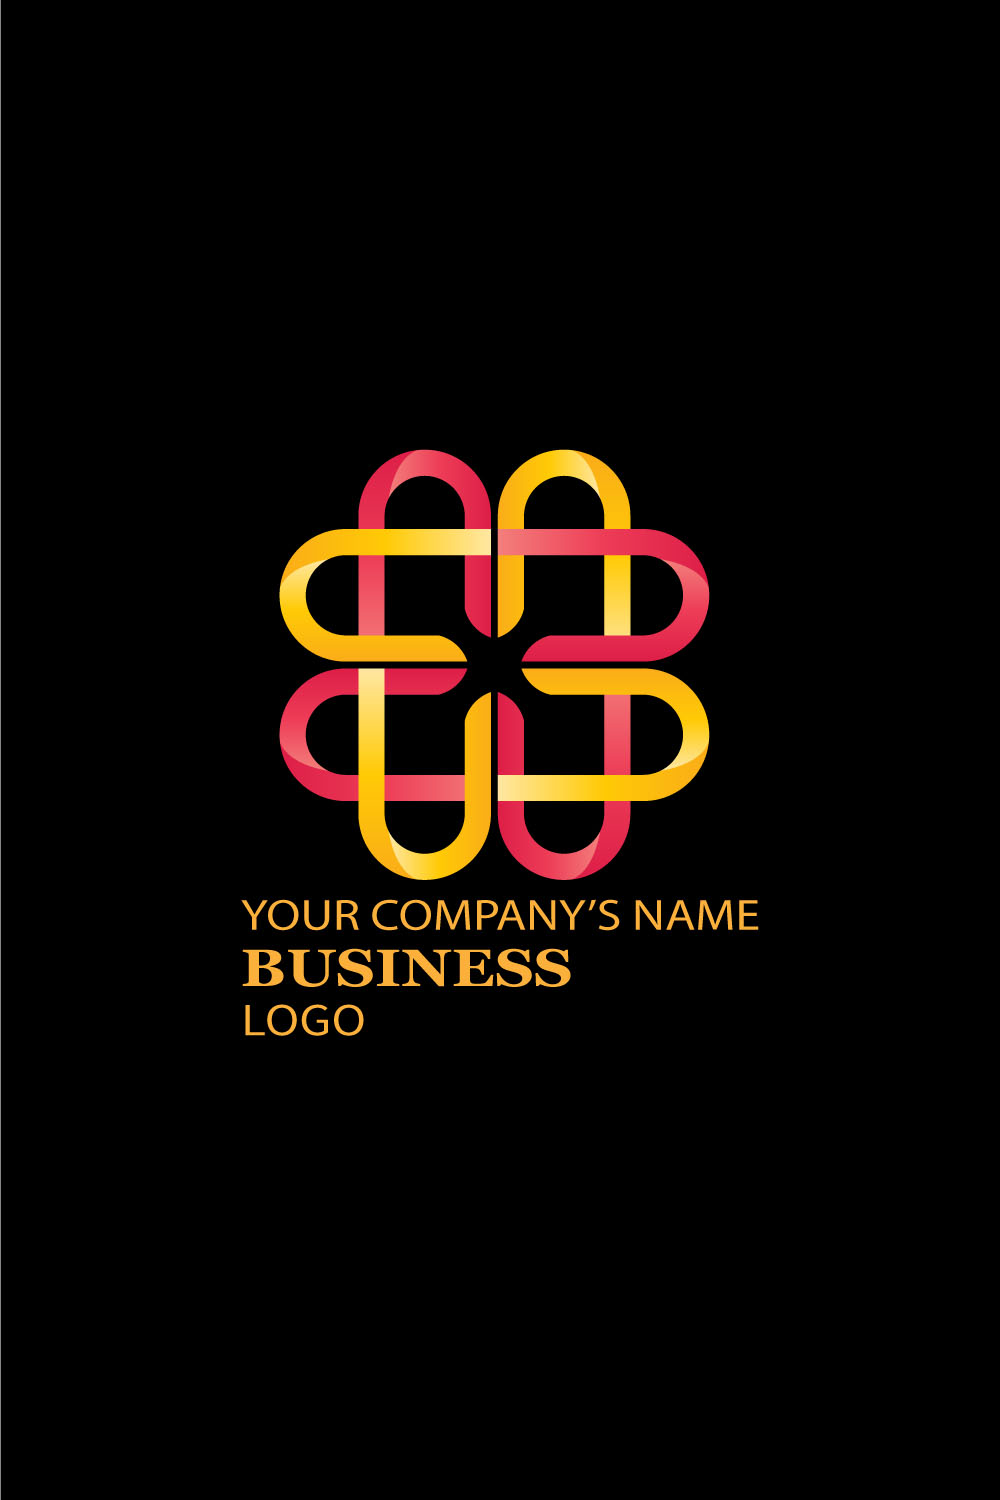 Exquisite design geometric logo image